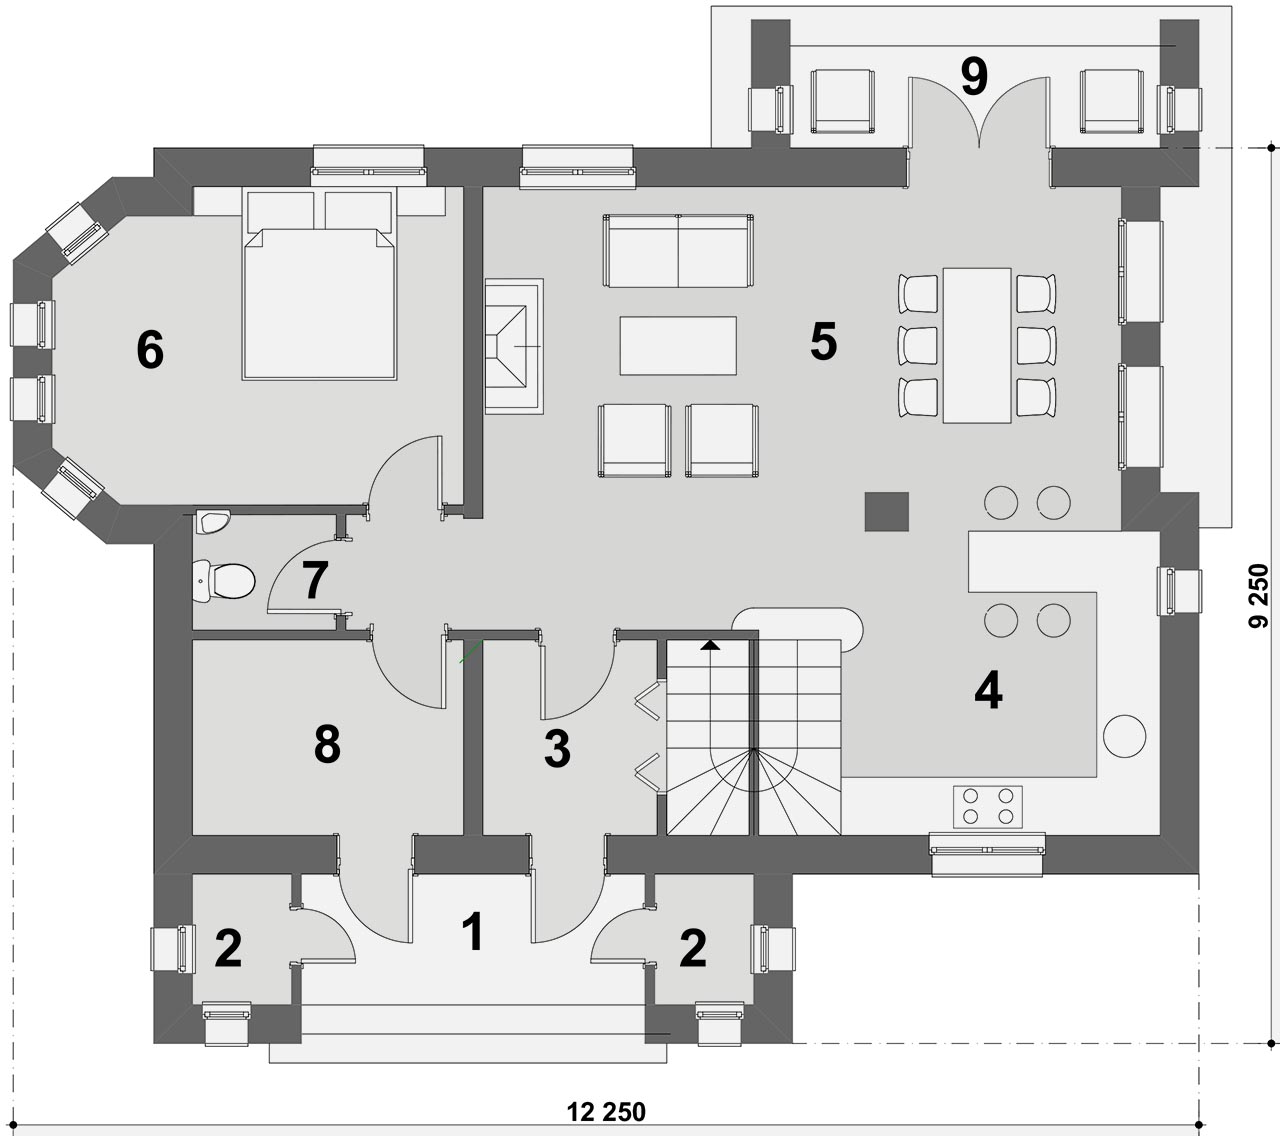 план первого этажа 6-комнатного коттеджа 12 на 9 метров стильный